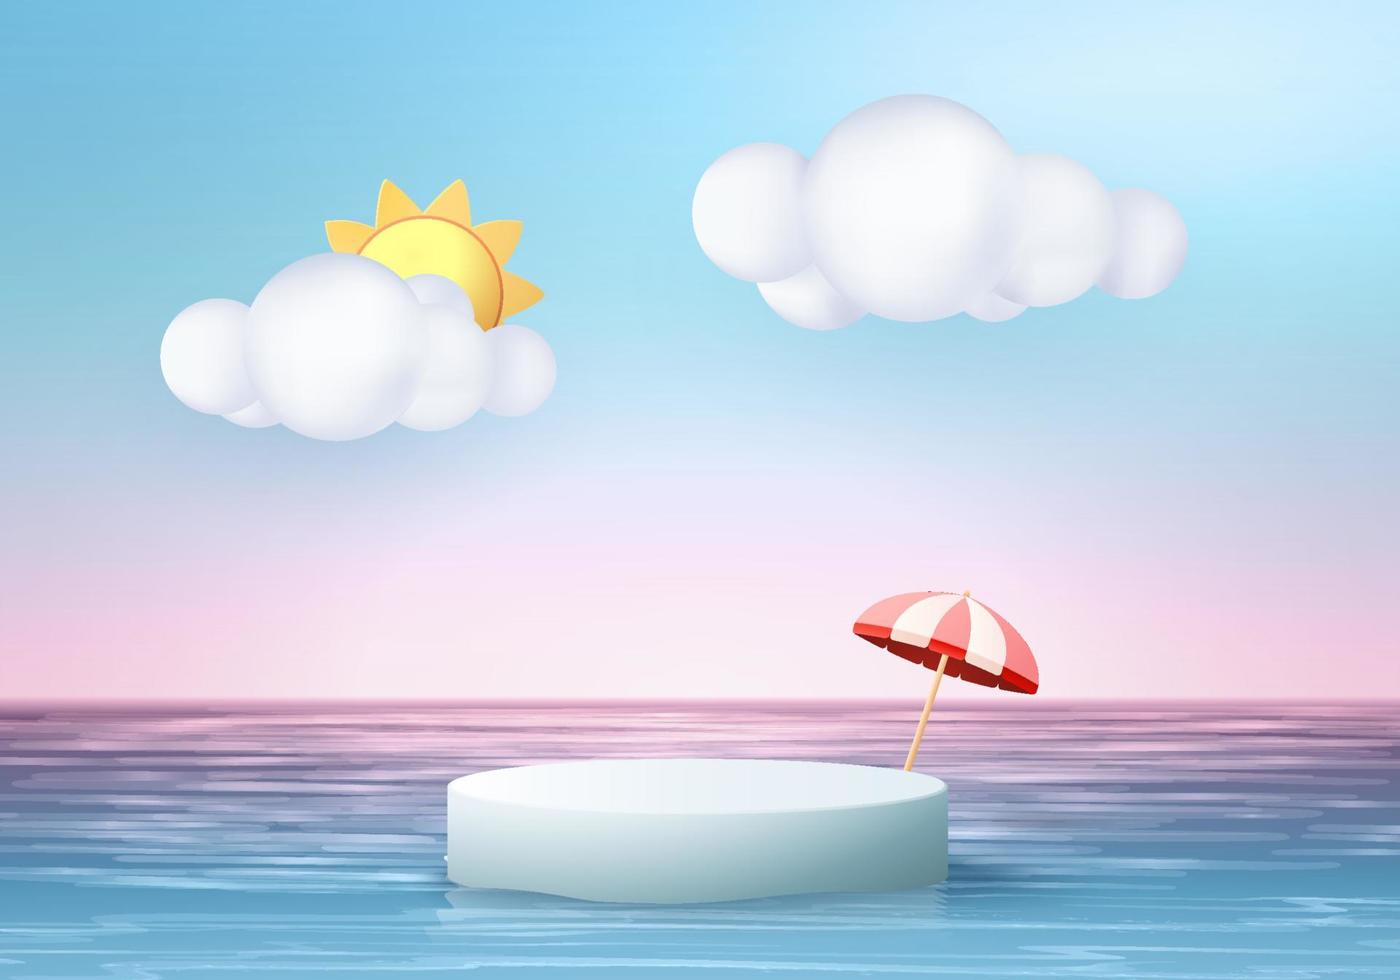 3D zomer achtergrond product display podium scène met cloud platform. zomer achtergrond vector 3d render op oceaan, podium in zee. stand show cosmetisch product display blauwe lucht